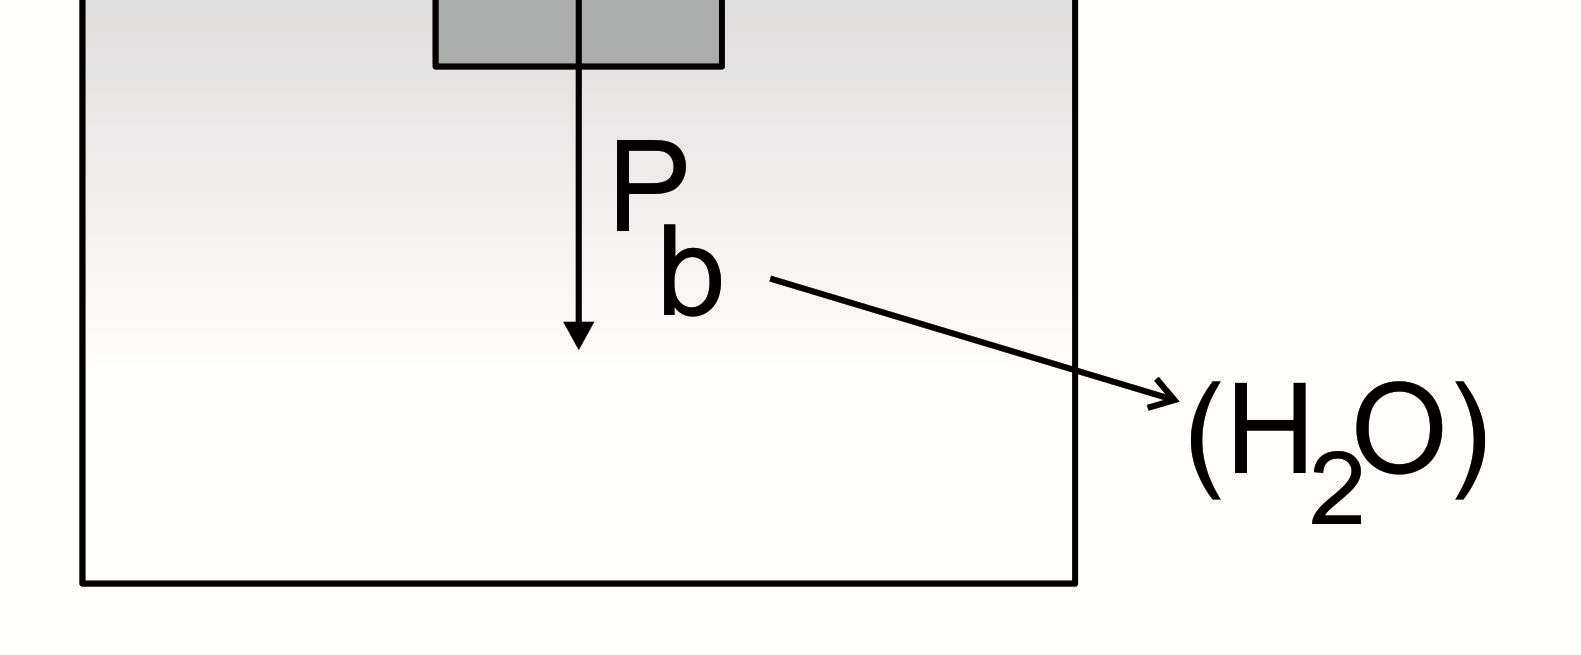 34 Estando em equilíbrio, a resultante no bloco é nula: P b = E d V g = d V g V = 0,6V b b LD LD LD b d V =